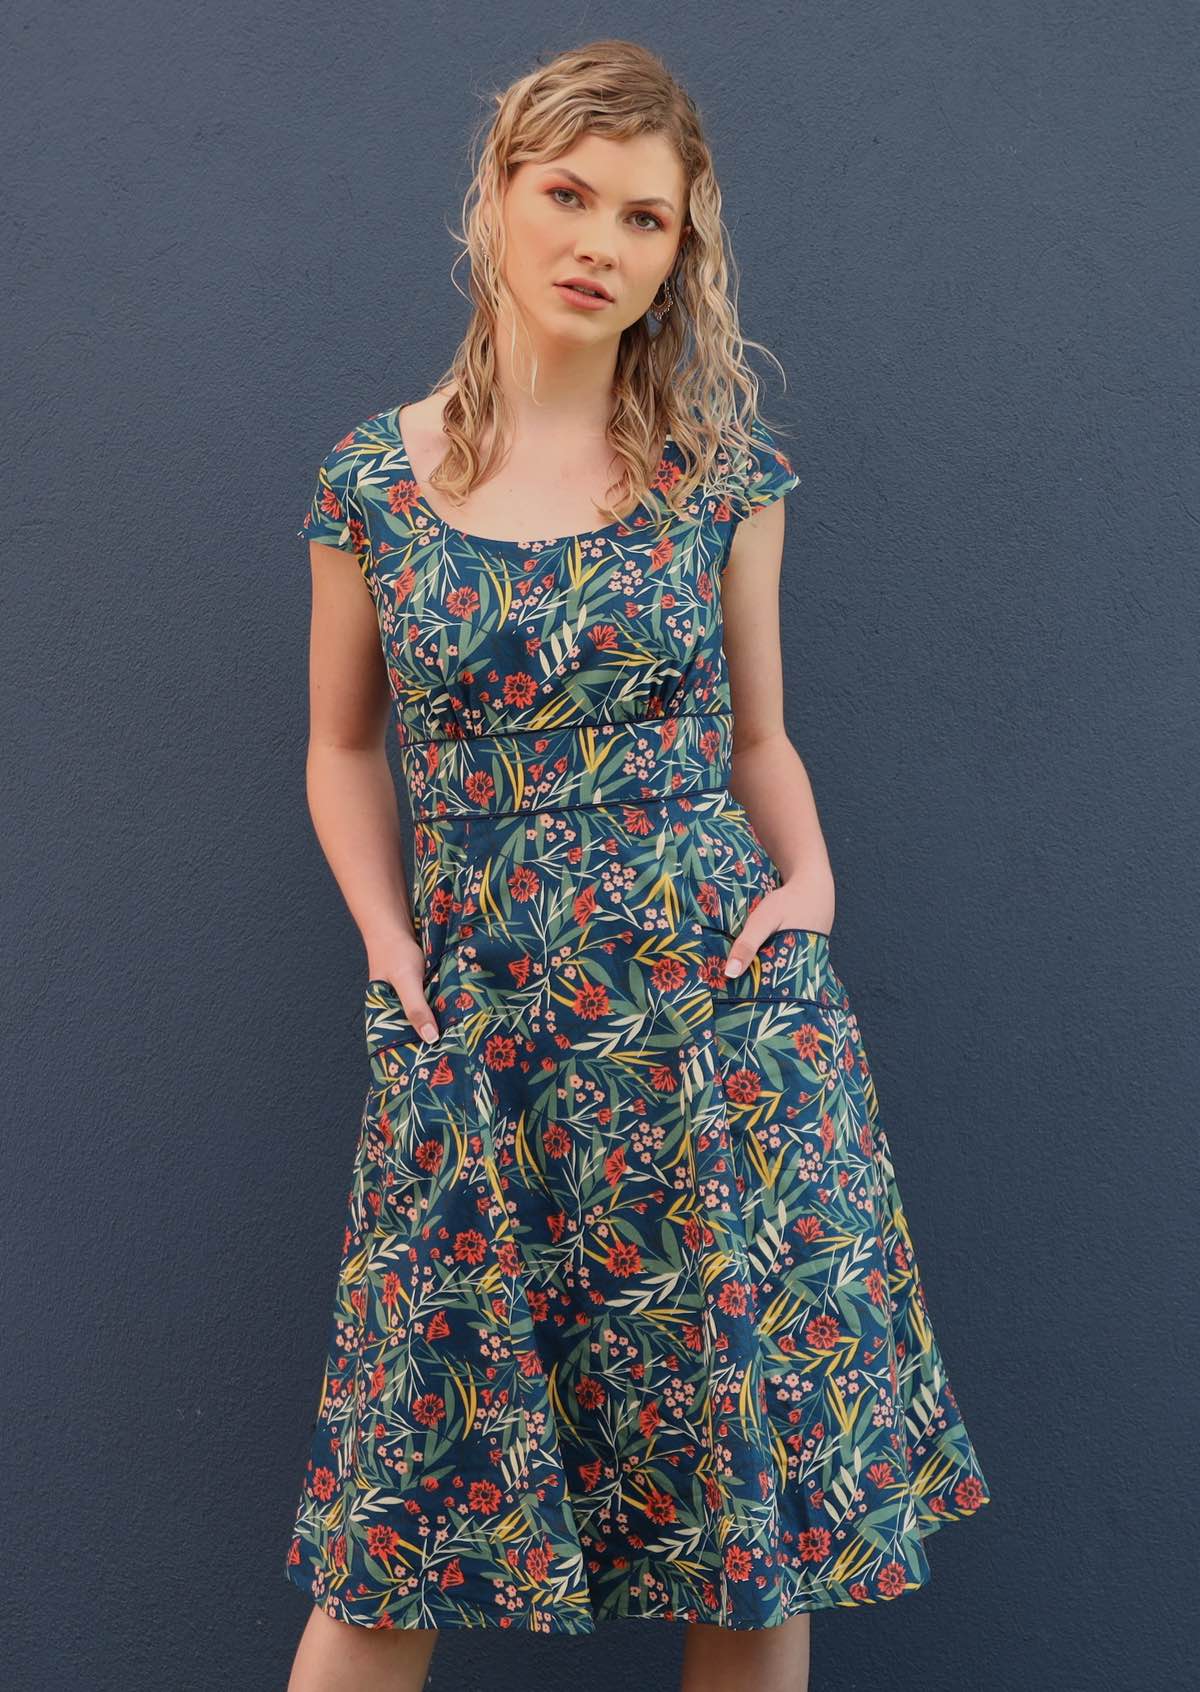 Cotton Dresses - Cotton Midi Dresses, Cotton Summer Dresses & More